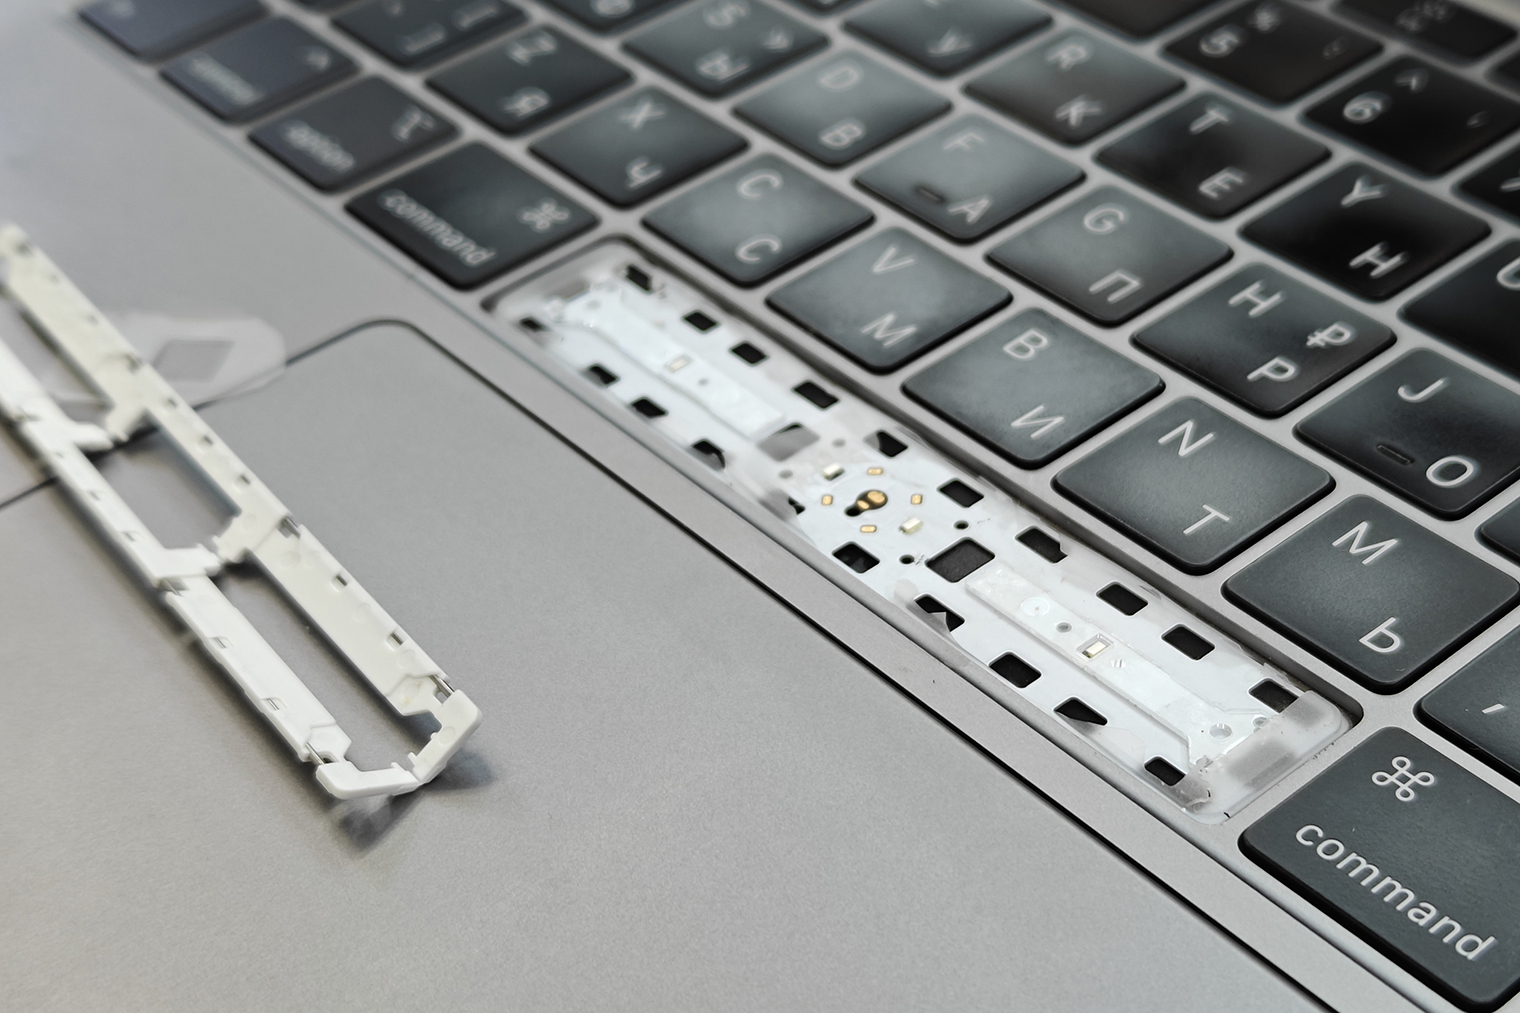 При проблемах с клавиатурой-бабочкой на Макбуке официальные сервисы обязаны заменить всю нижнюю часть корпуса вместе с тачпадом и кнопками. Независимые мастера могут просто починить или заменить сломанные клавиши